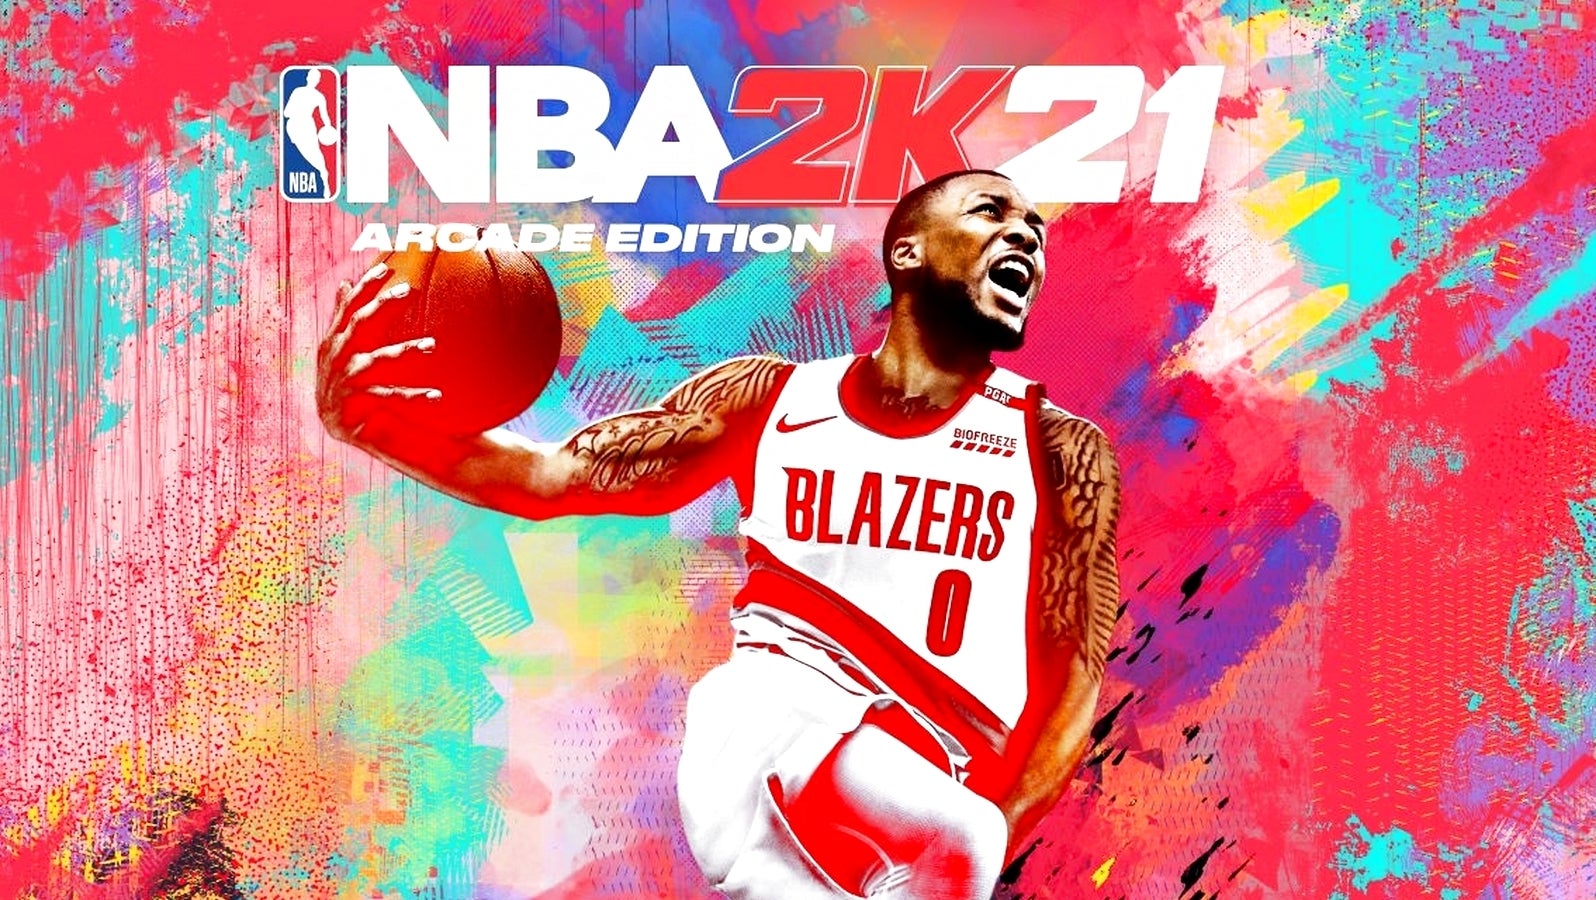 Bilder zu NBA 2K21 gibt's jetzt als Arcade Edition bei Apple Arcade